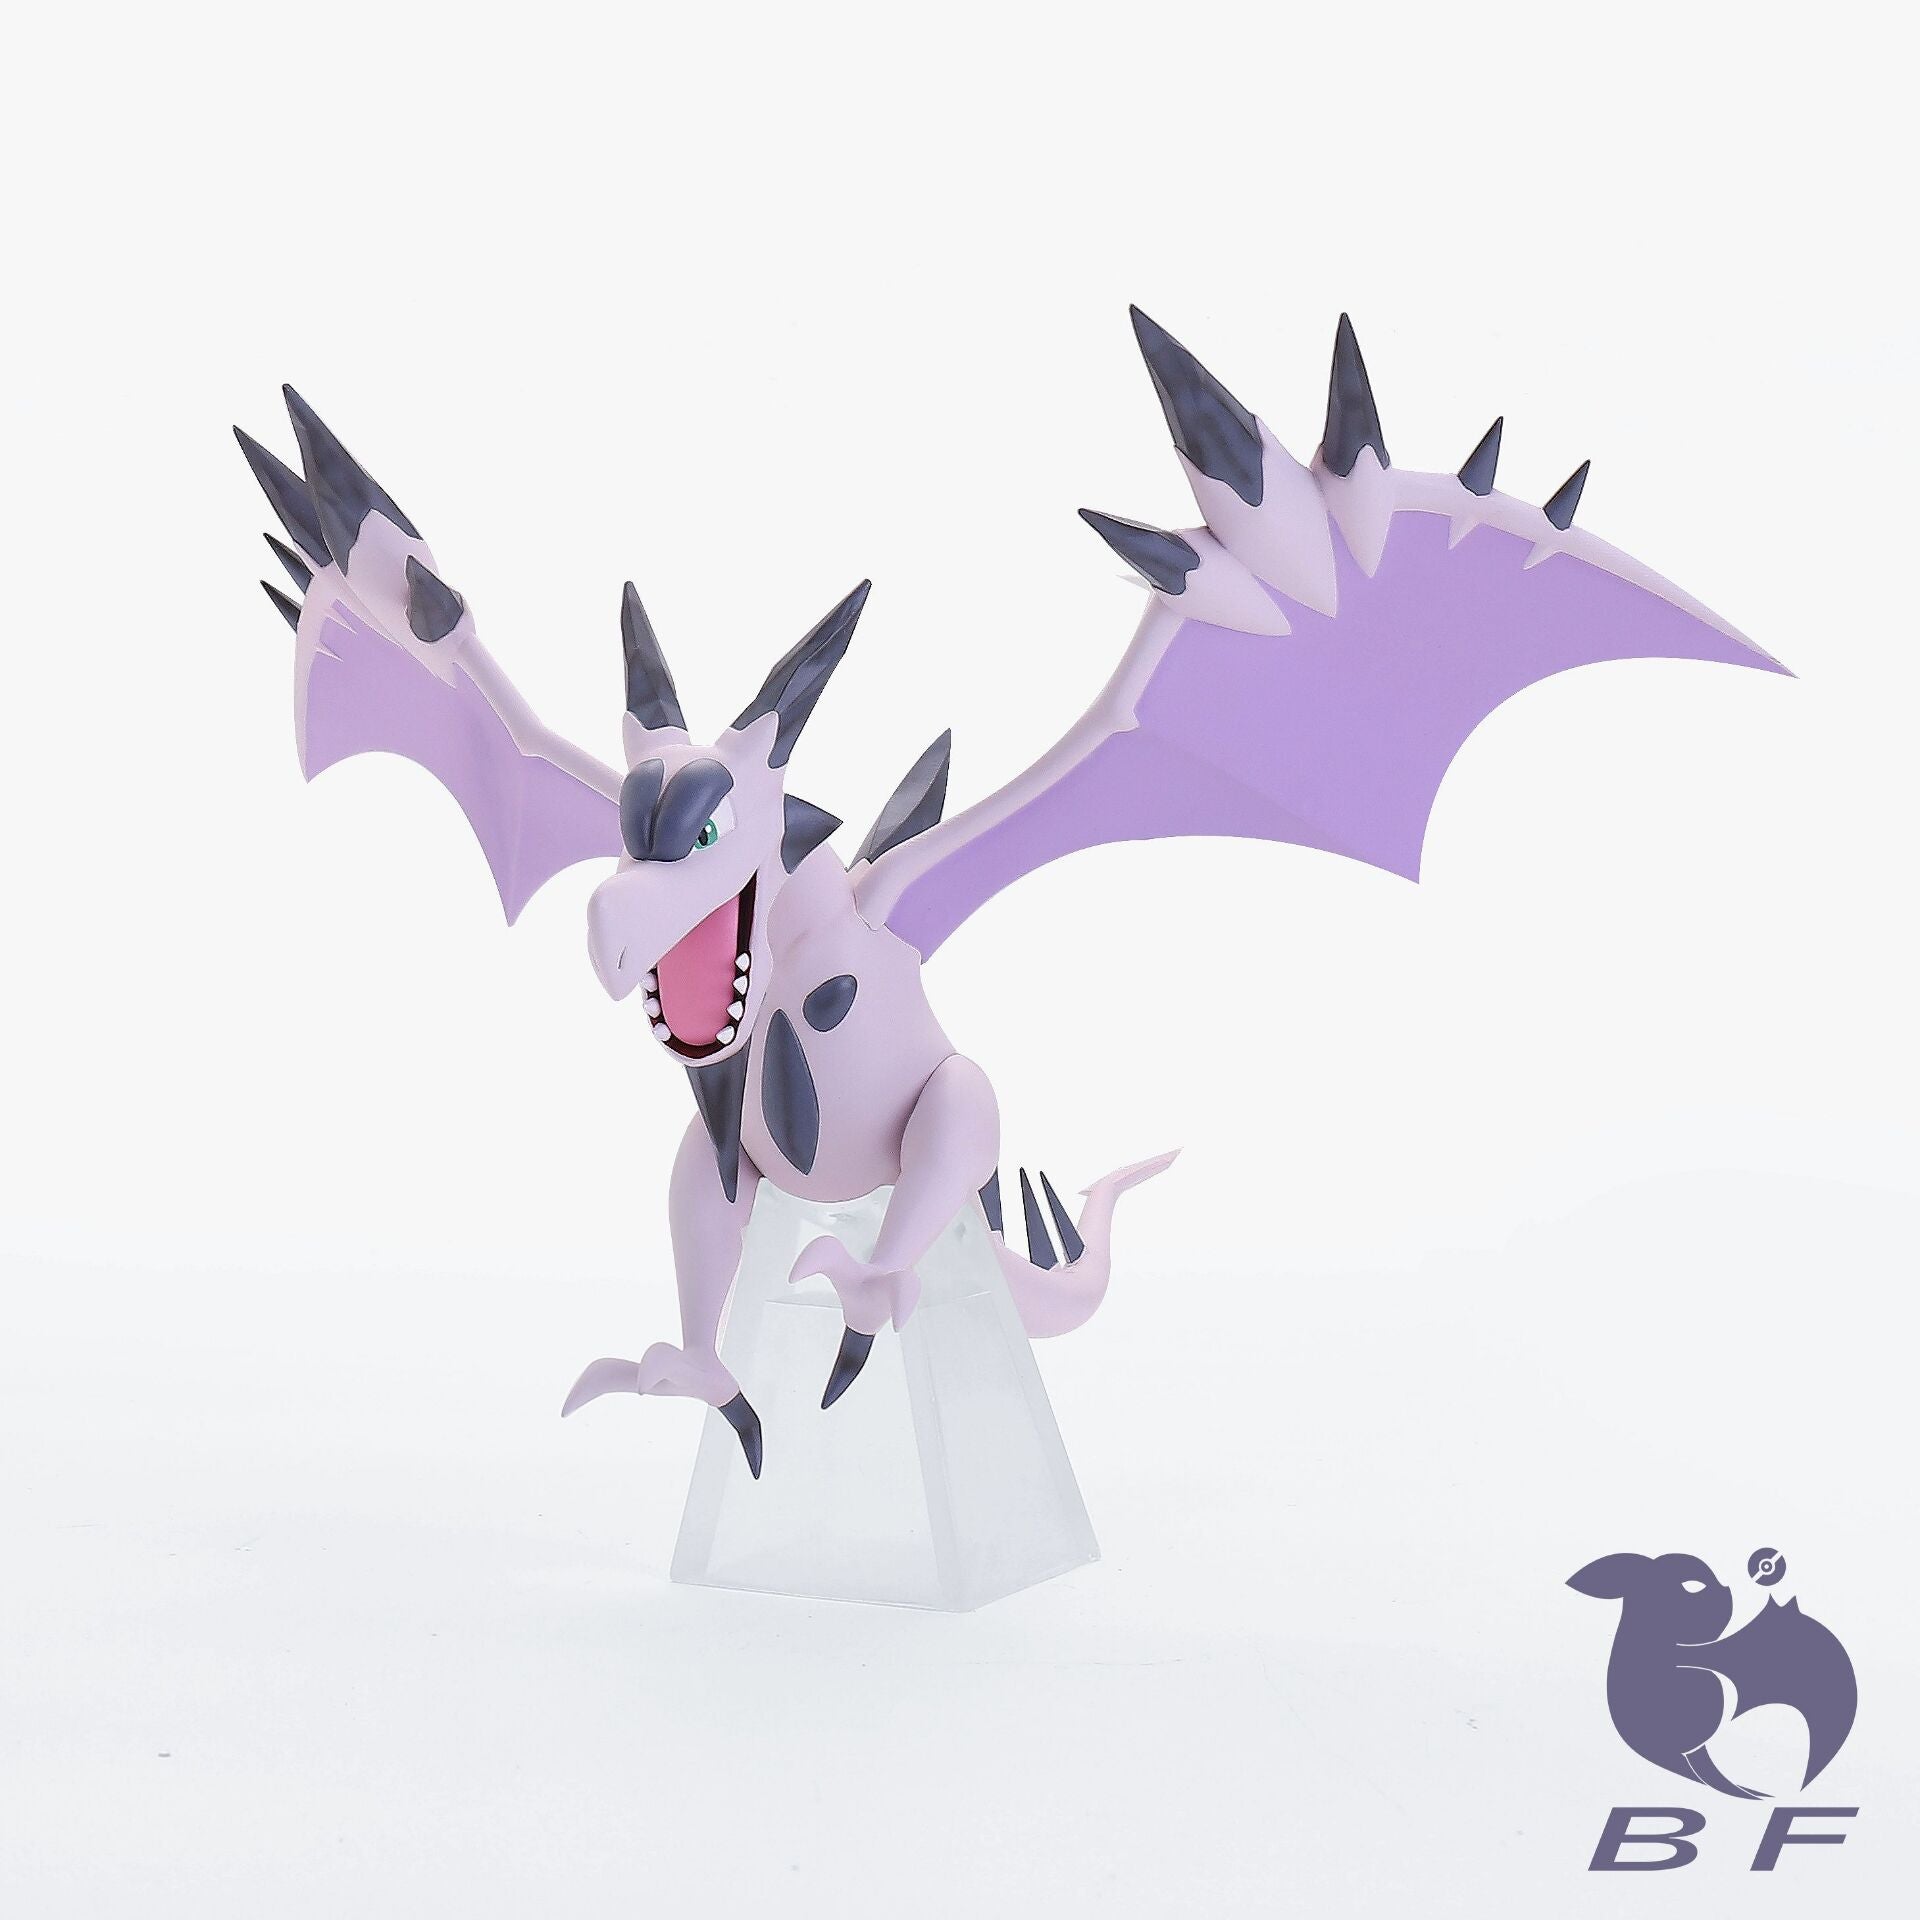 Mega Aerodactyl (Pokémon) - Pokémon GO